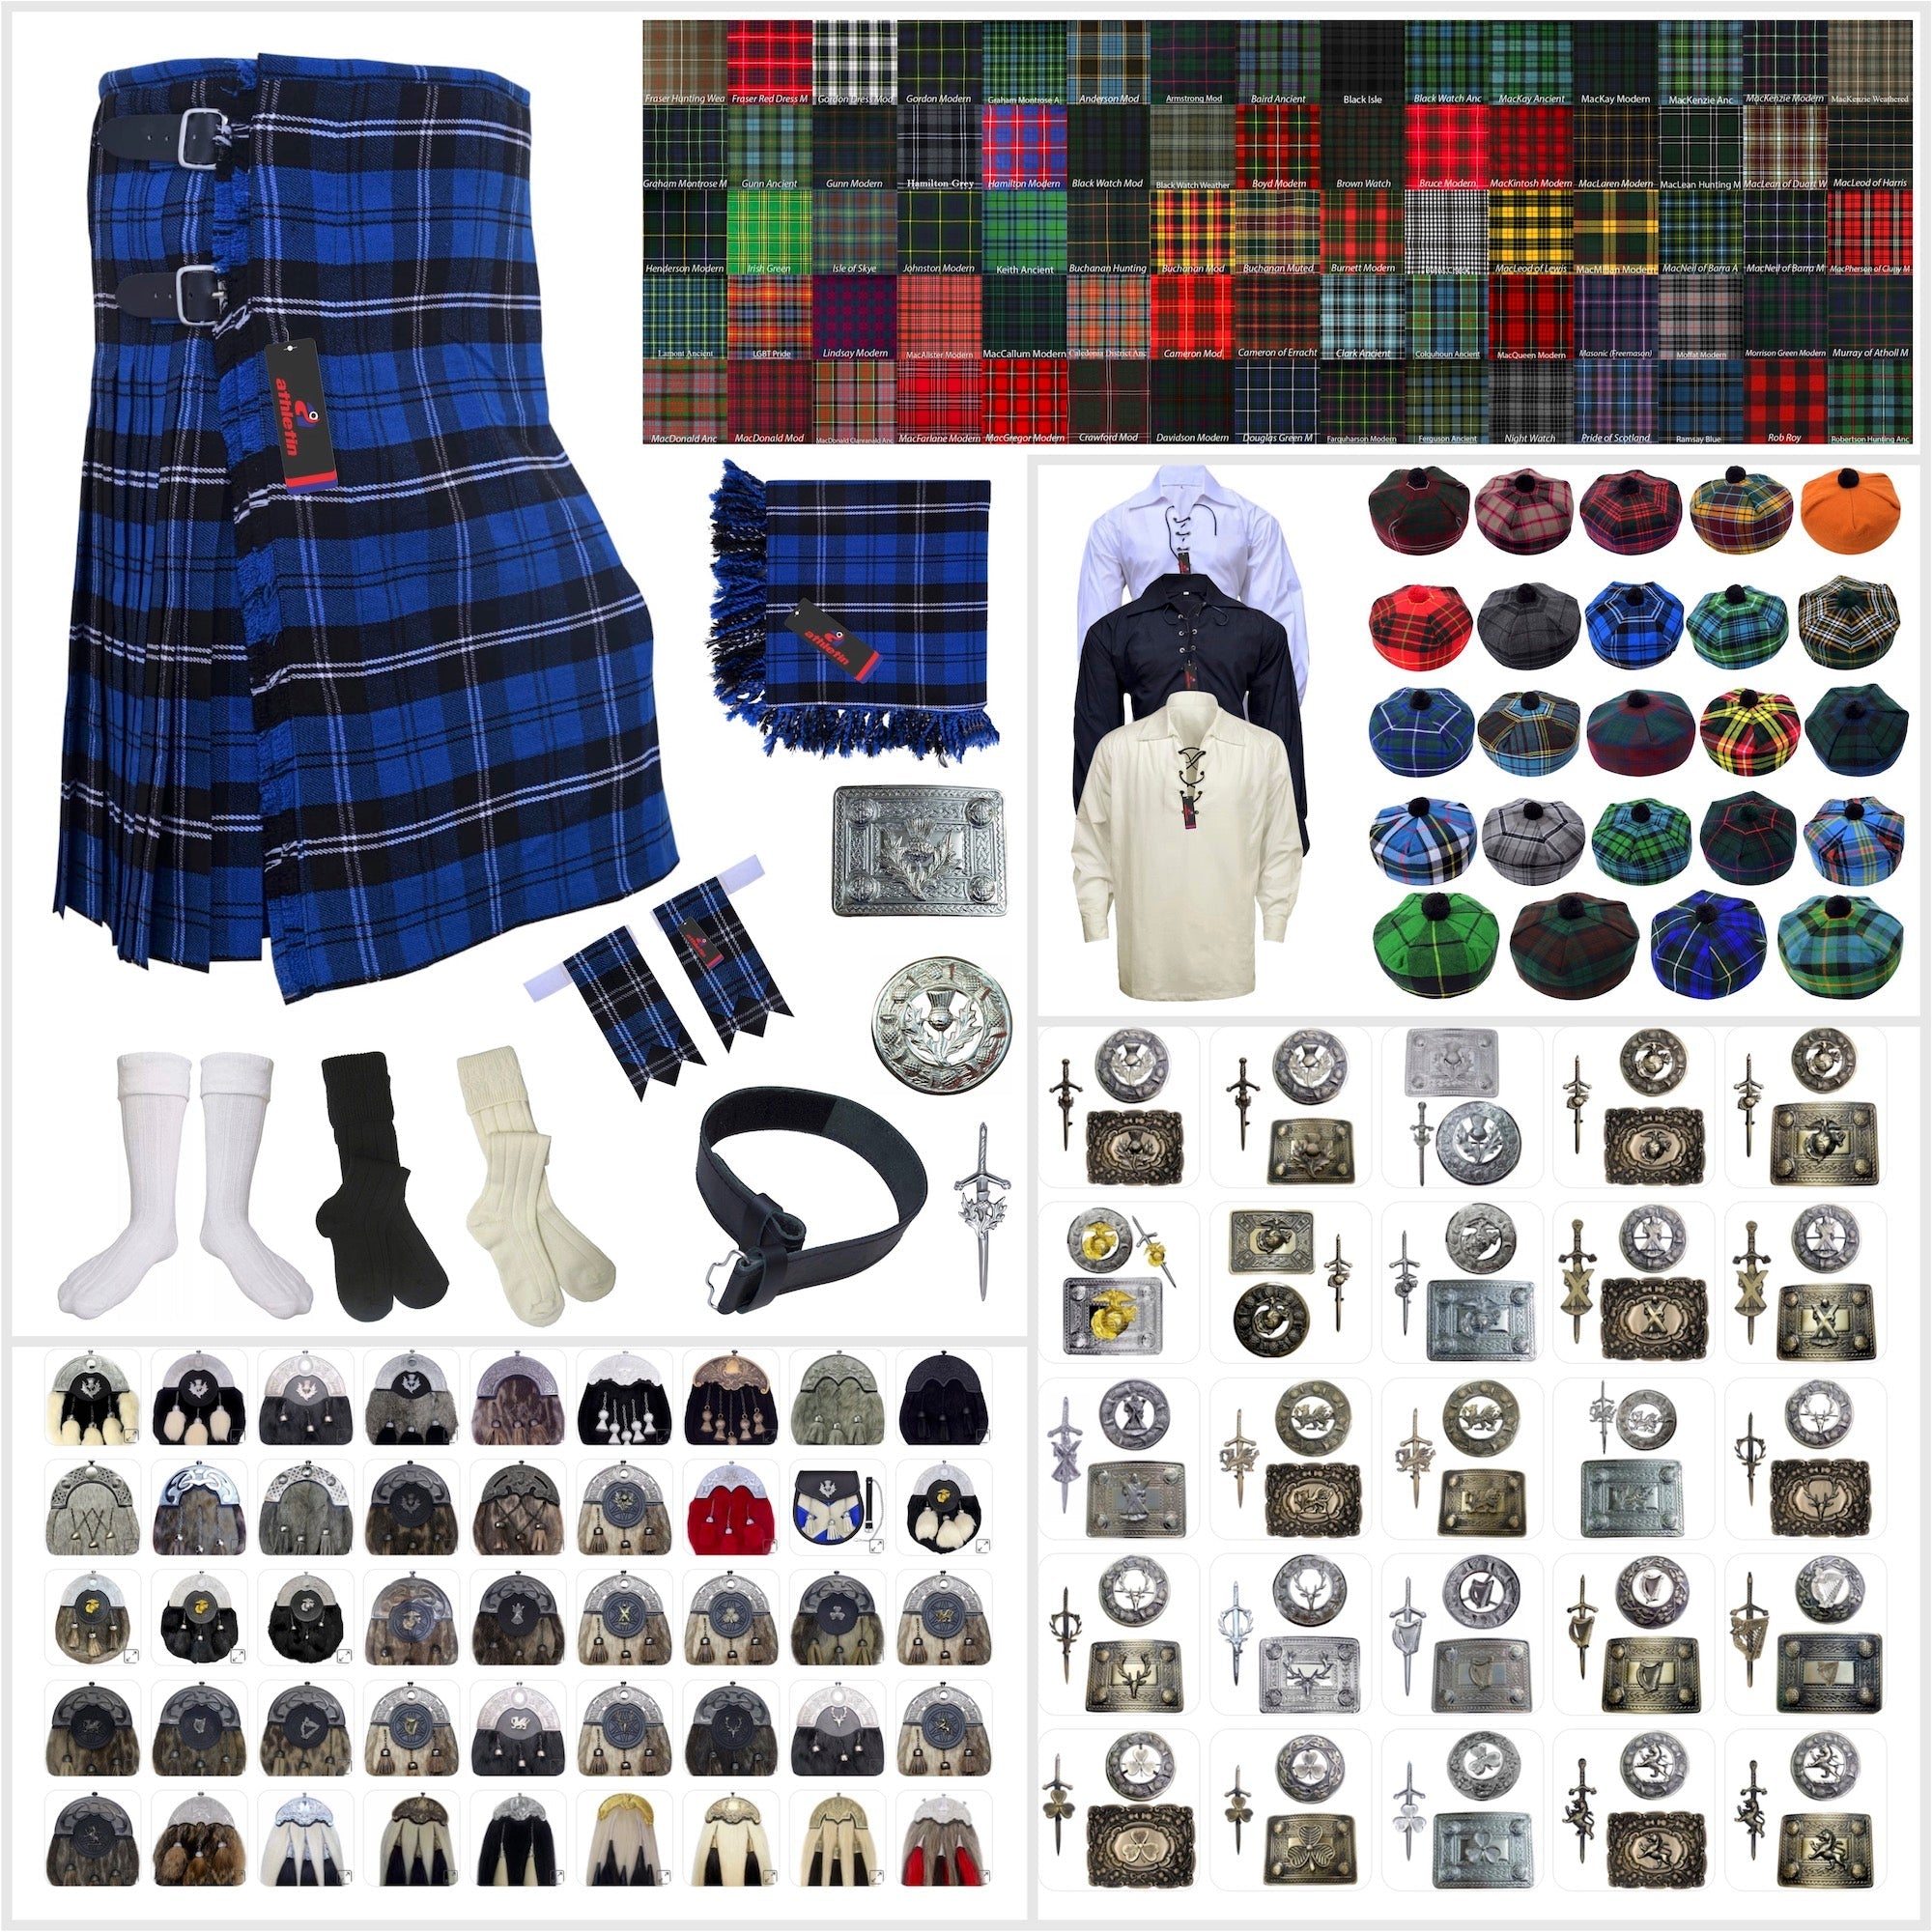 Ramsay Blue Tartan Kilt Outfit - Vibrant Scottish Fashion